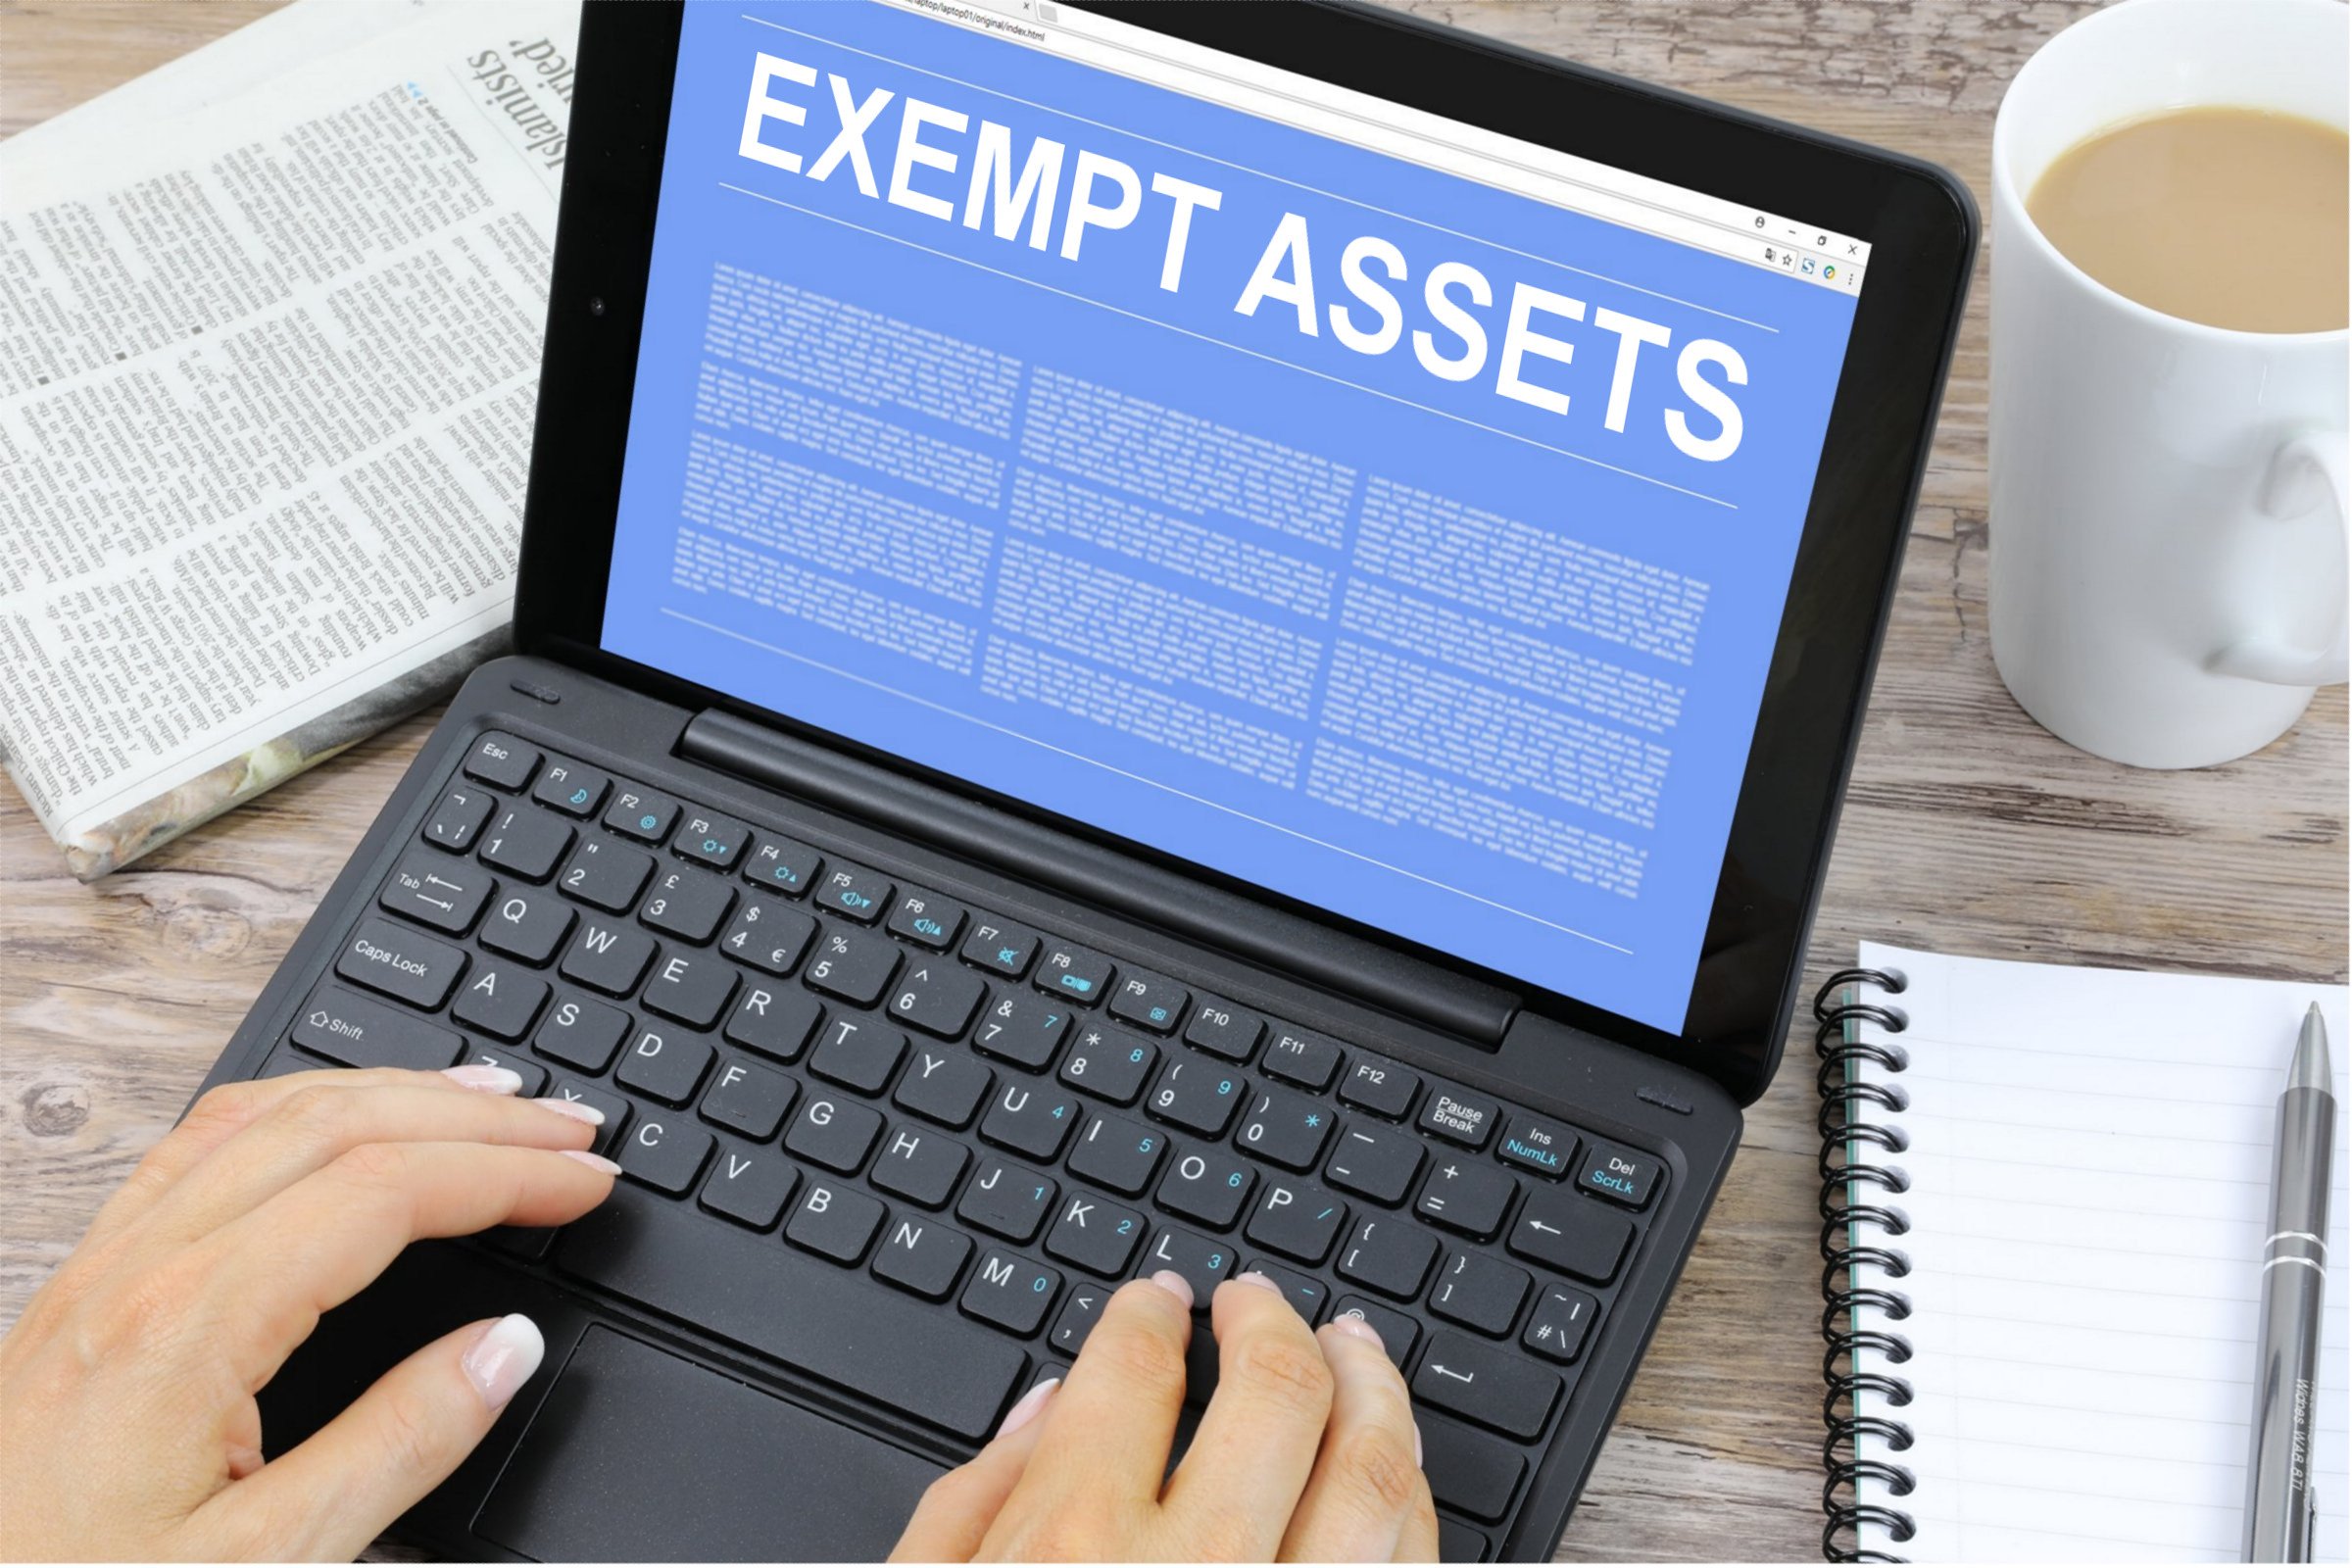 Exempt Assets